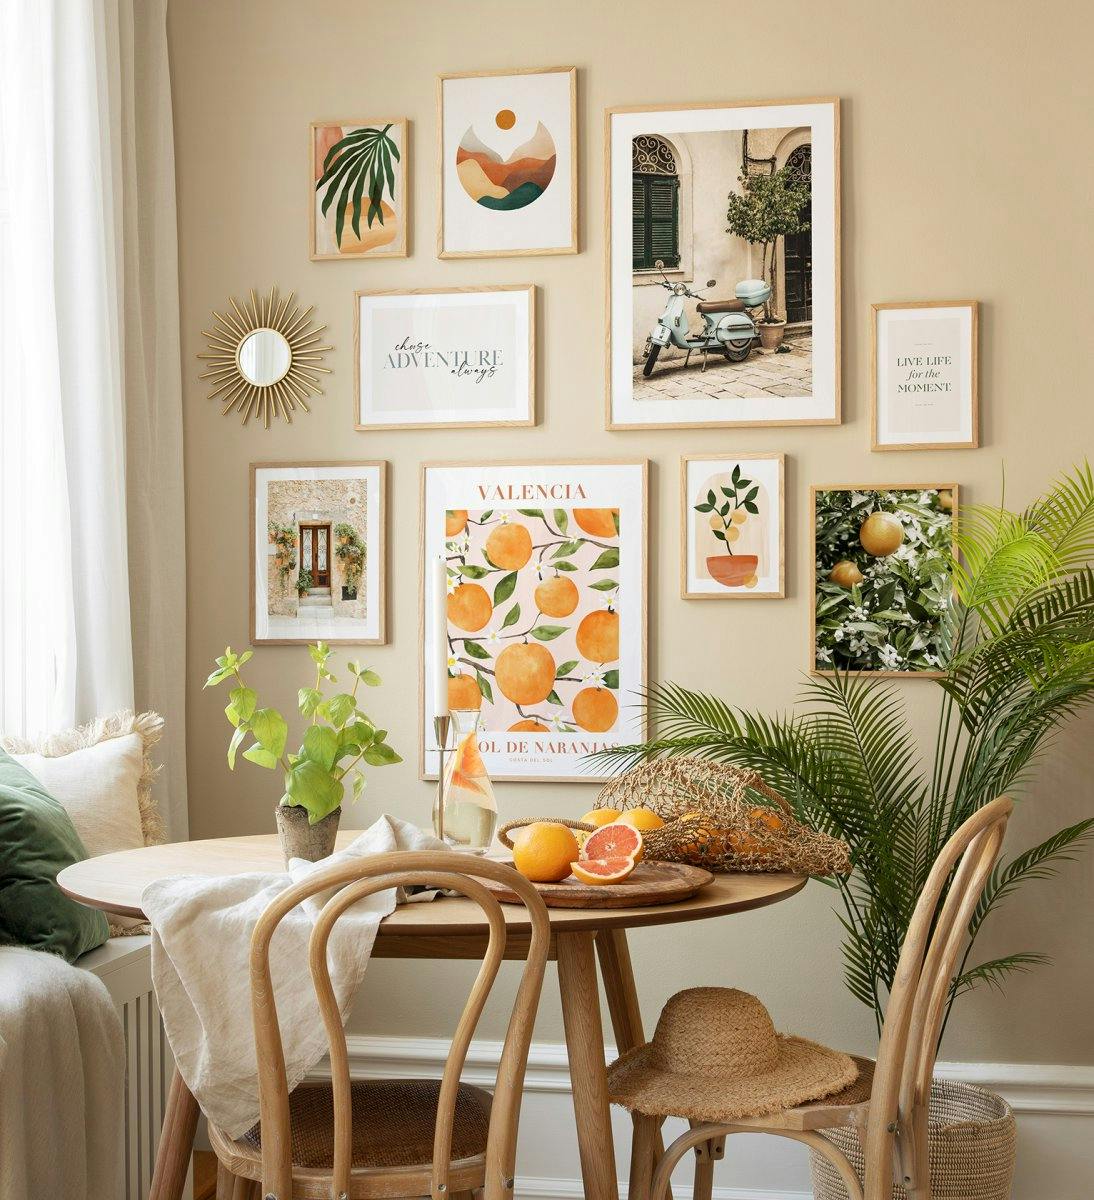 Flot billedvæg til dit køkken. Bliv inspireret af disse trendy plakater og egetræsrammer, og istandsæt dit hjem!